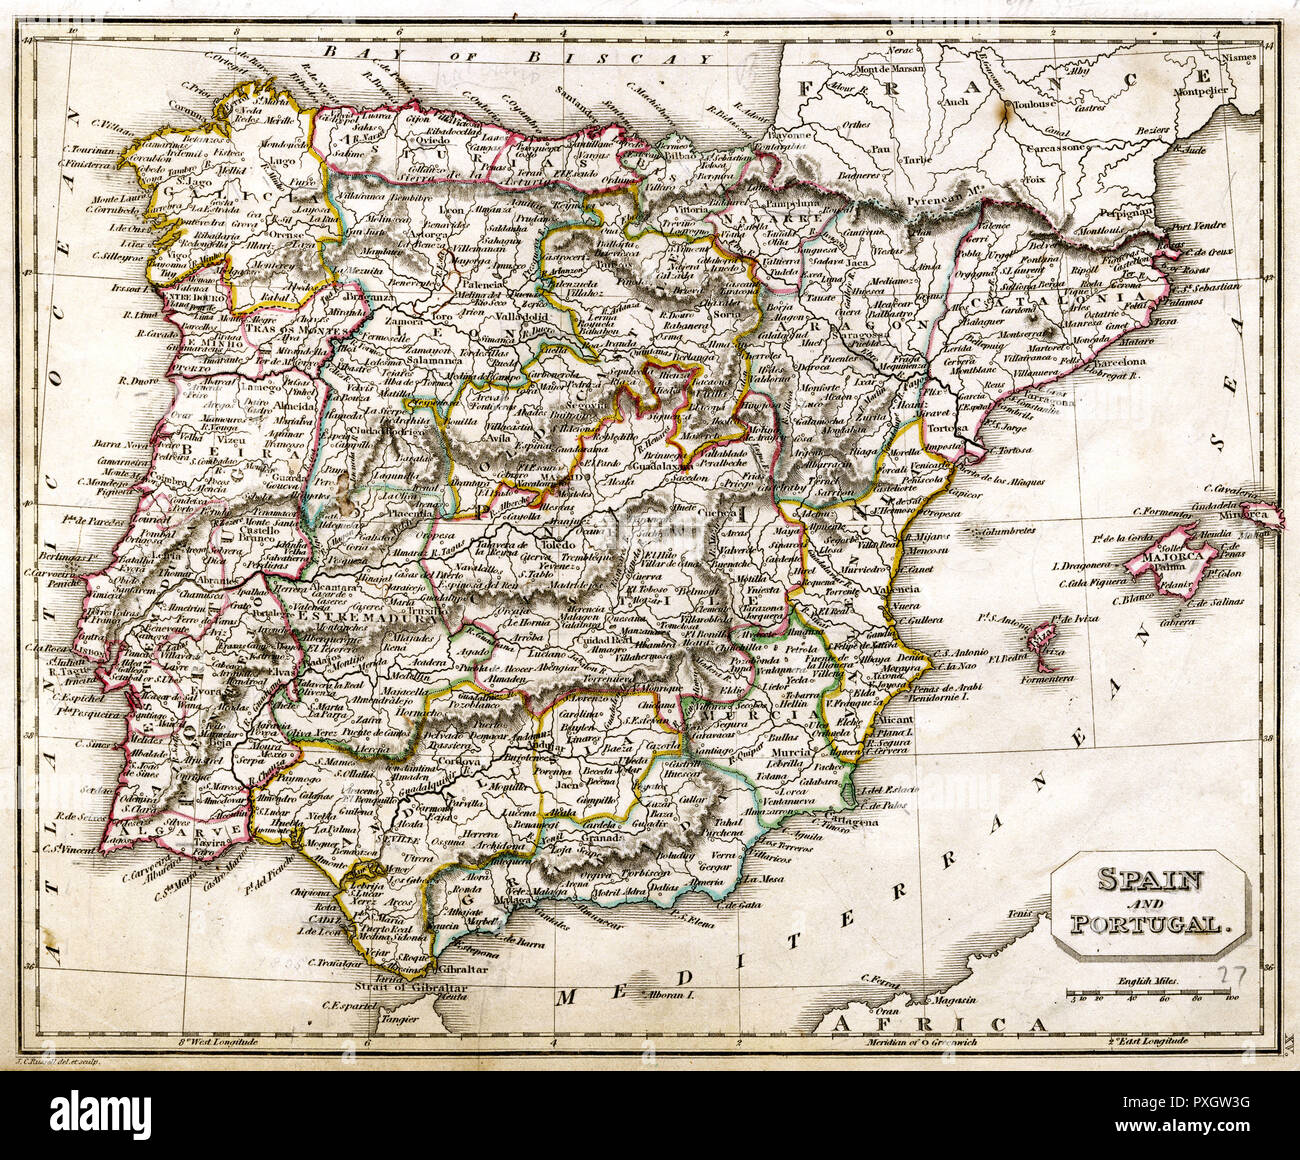 821 fotos de stock e banco de imagens de Mapa España Portugal - Getty Images